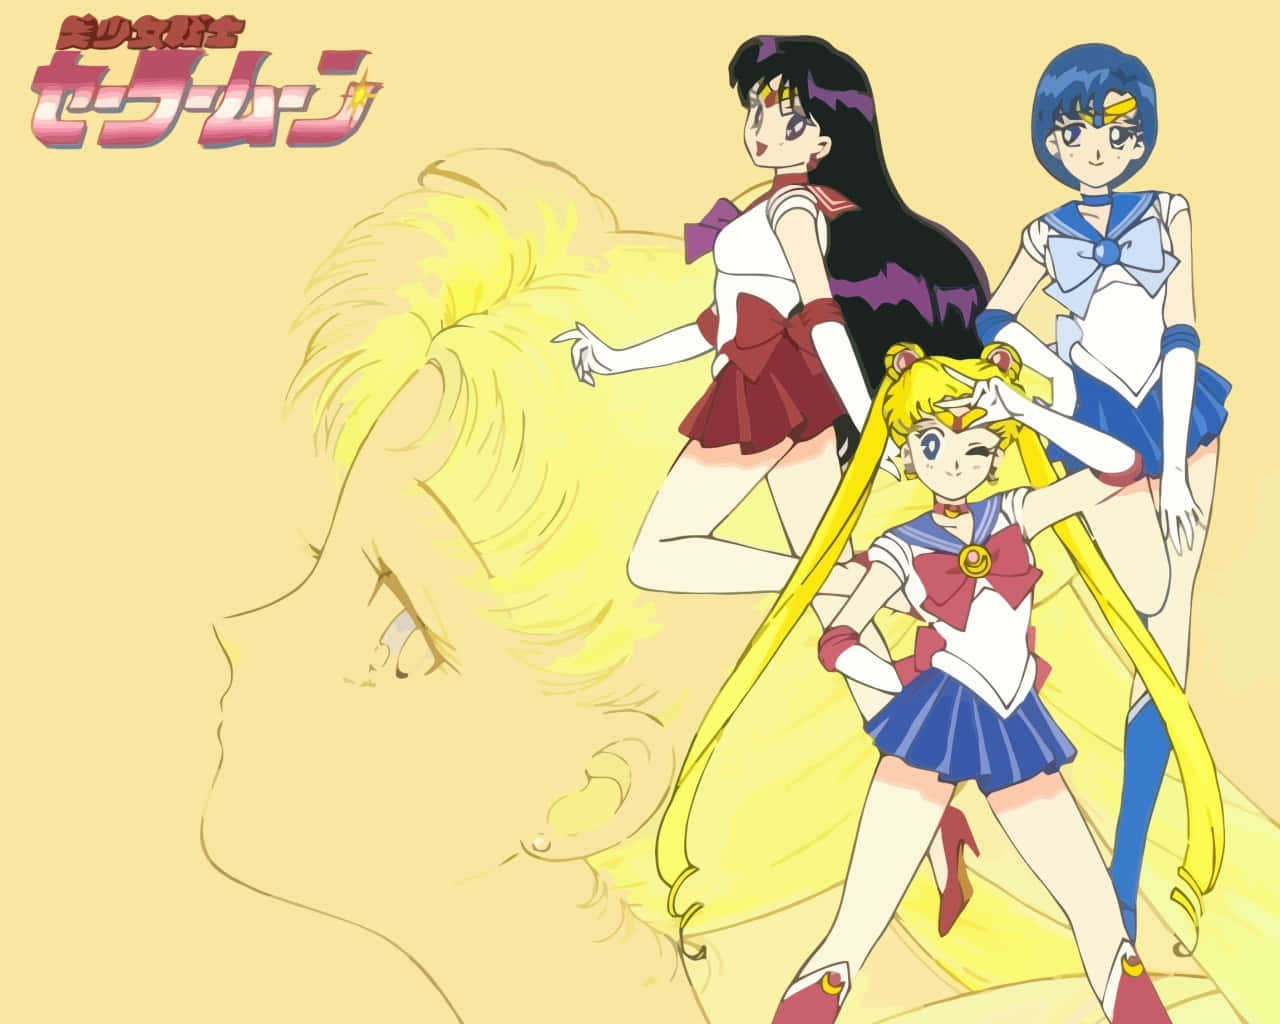 Klassiskanimekrigare, Sailor Moon